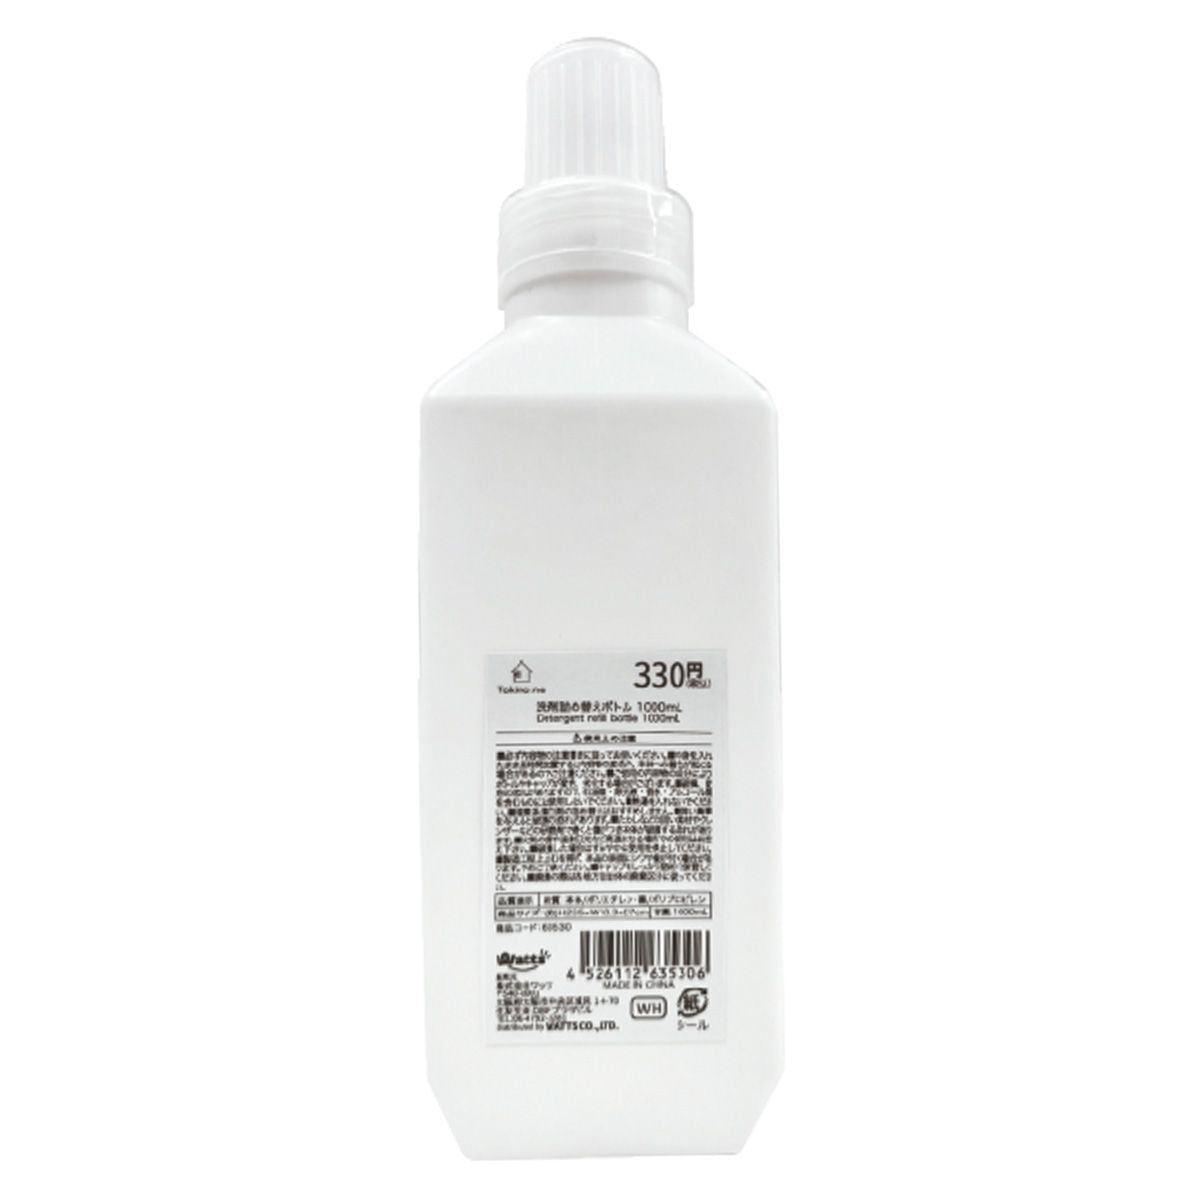 詰め替え容器 洗濯洗剤ボトル Tokinone PB. 洗剤詰め替えボトル1000ml ホワイト 063530